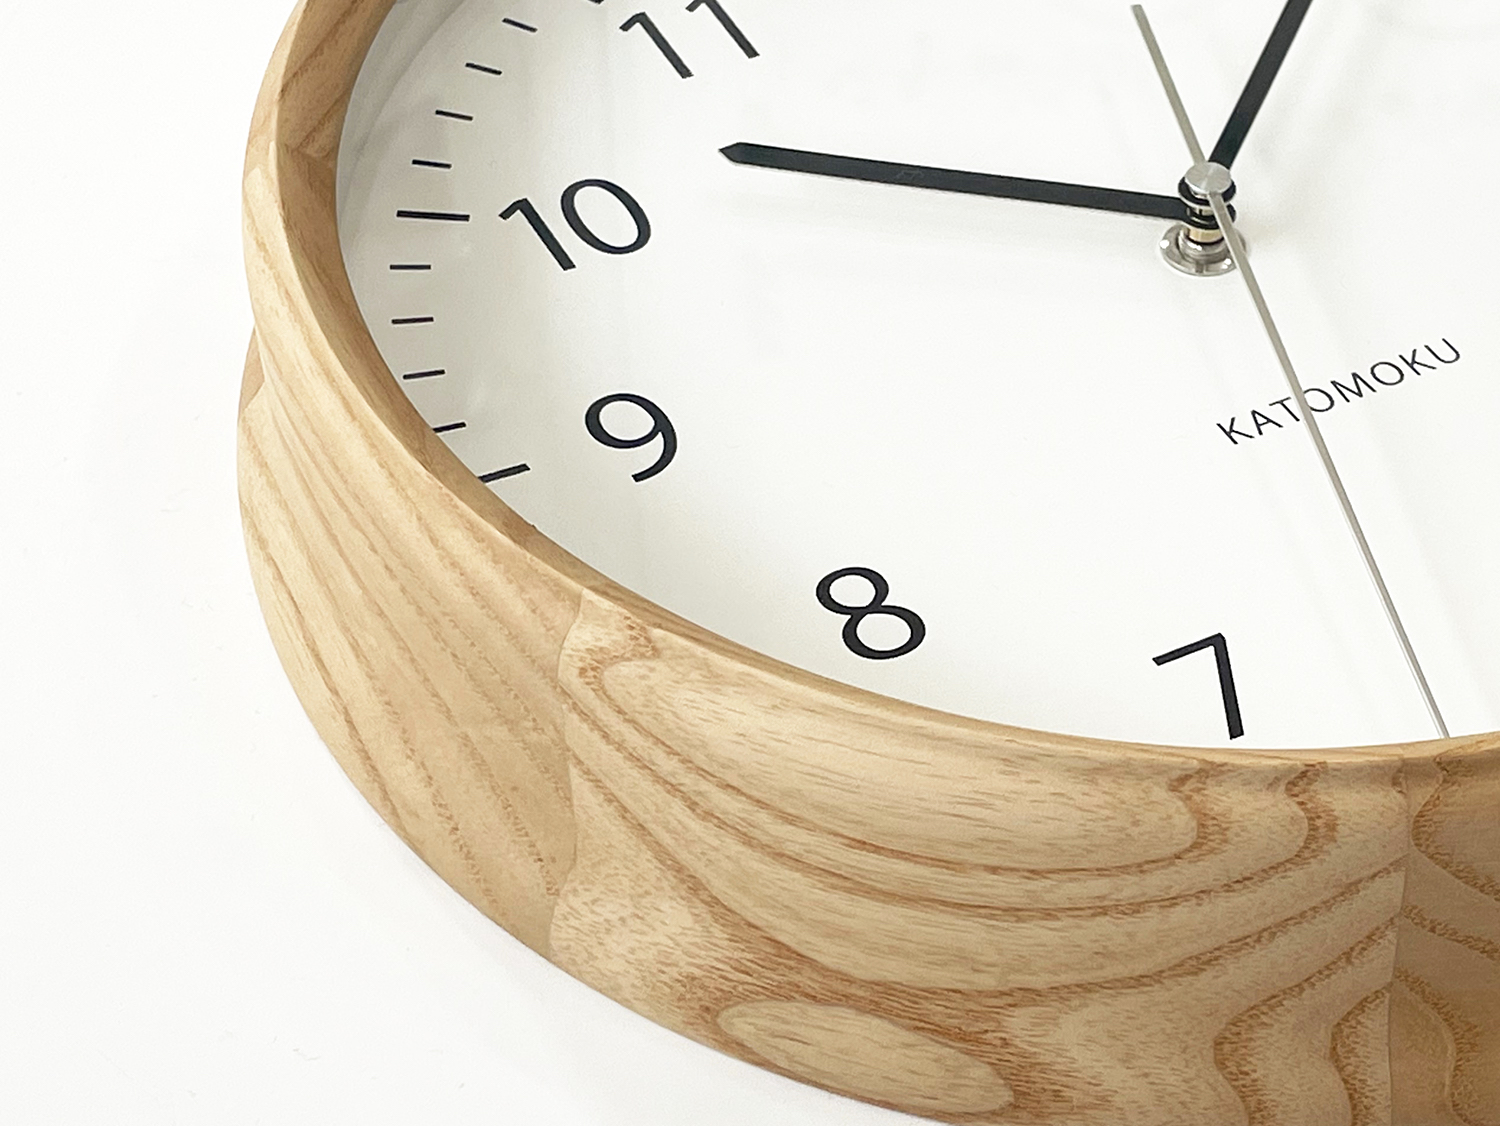 優れた品質 clock muku KATOMOKU 4 (ナチュラル) φ306mm km-57NRC 連続秒針ムーブメント 電波時計 ナチュラル  掛け時計、壁掛け時計 - raffles.mn